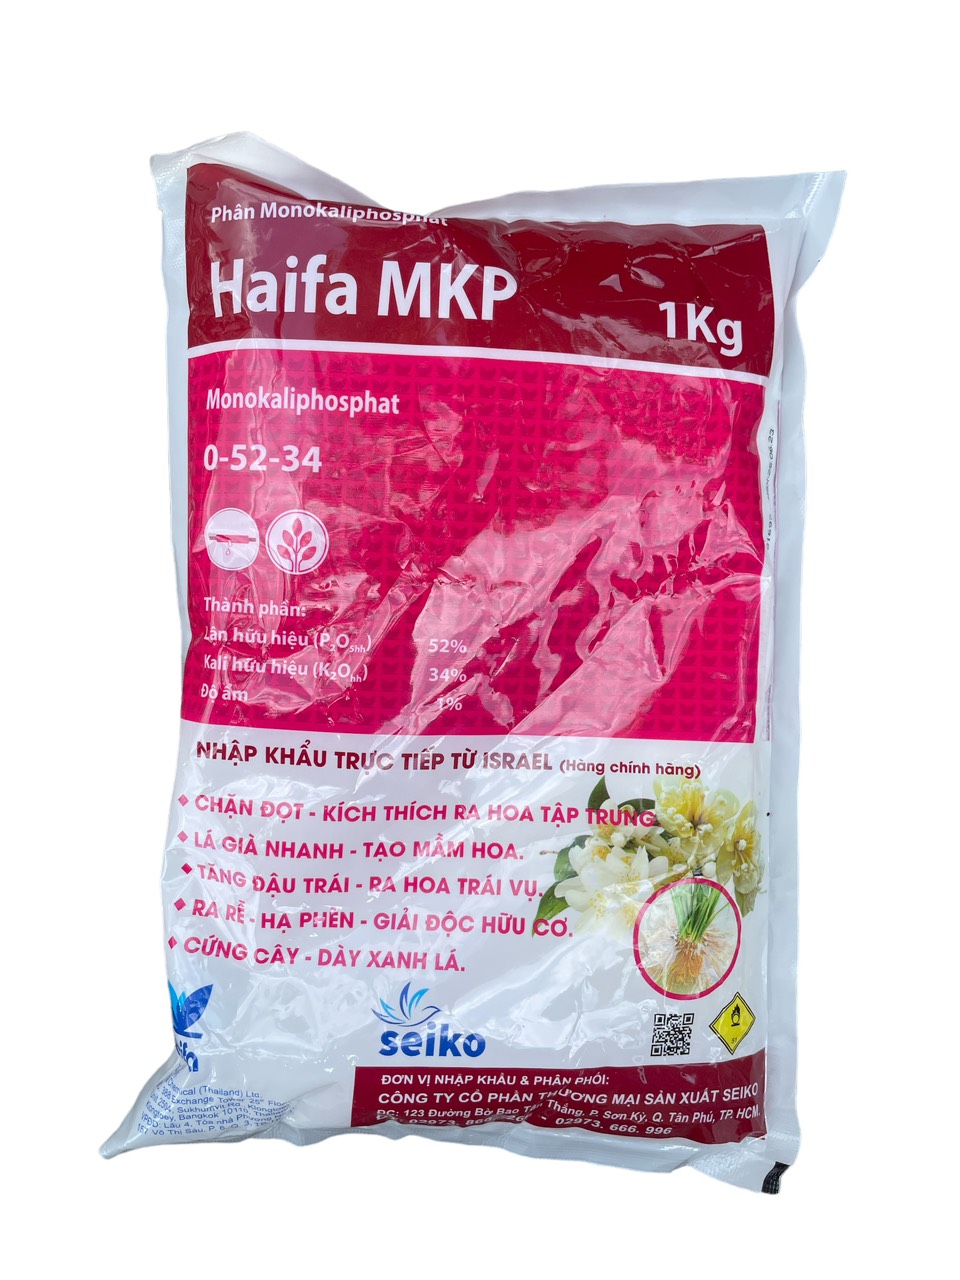 Phân bón tạo mầm hoa Haifa MPK 0-52-34 gói 1kg